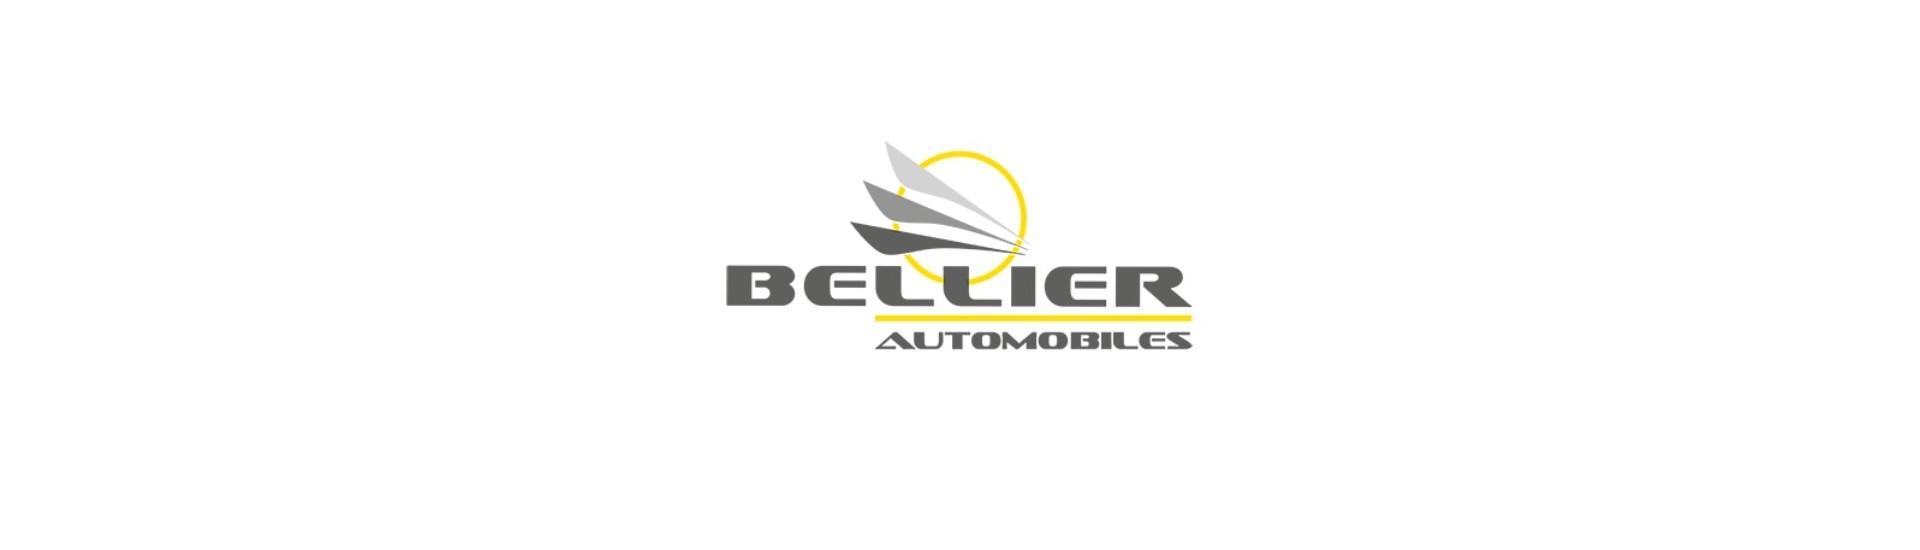 Kit de freio traseiro de melhor preço para carro sem permissão Bellier